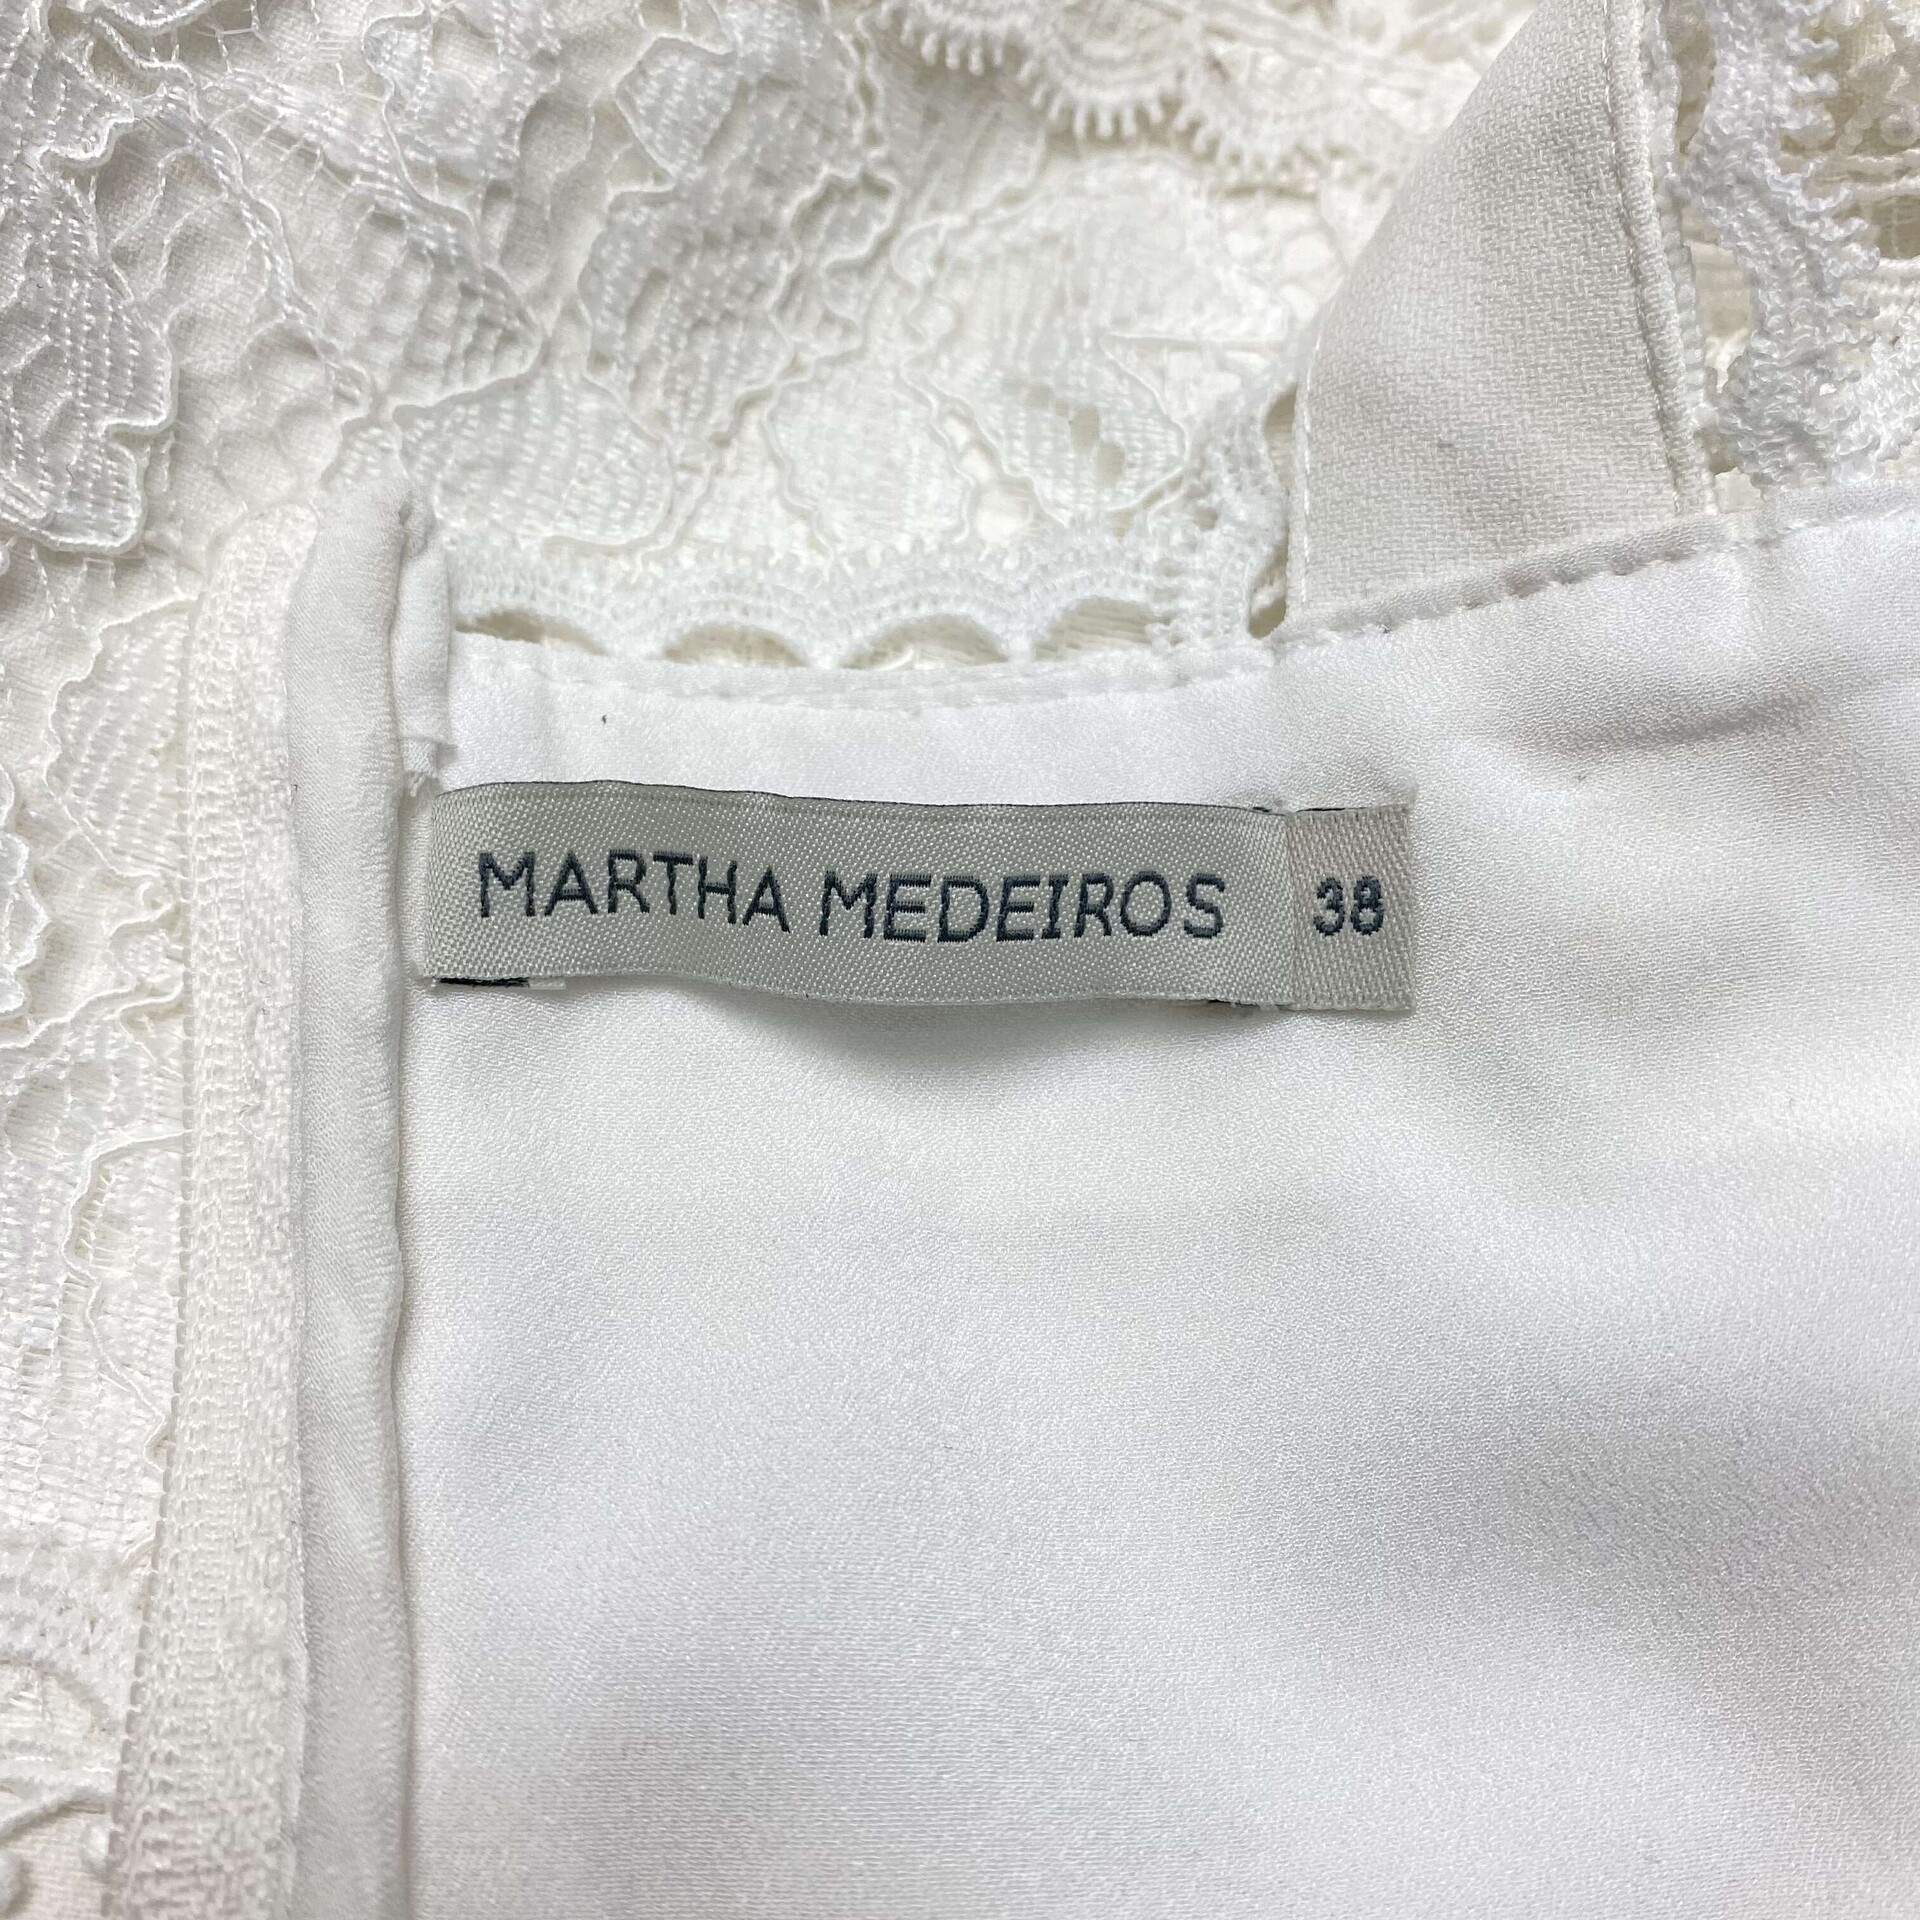 Cropped Martha Medeiros Renda Branco